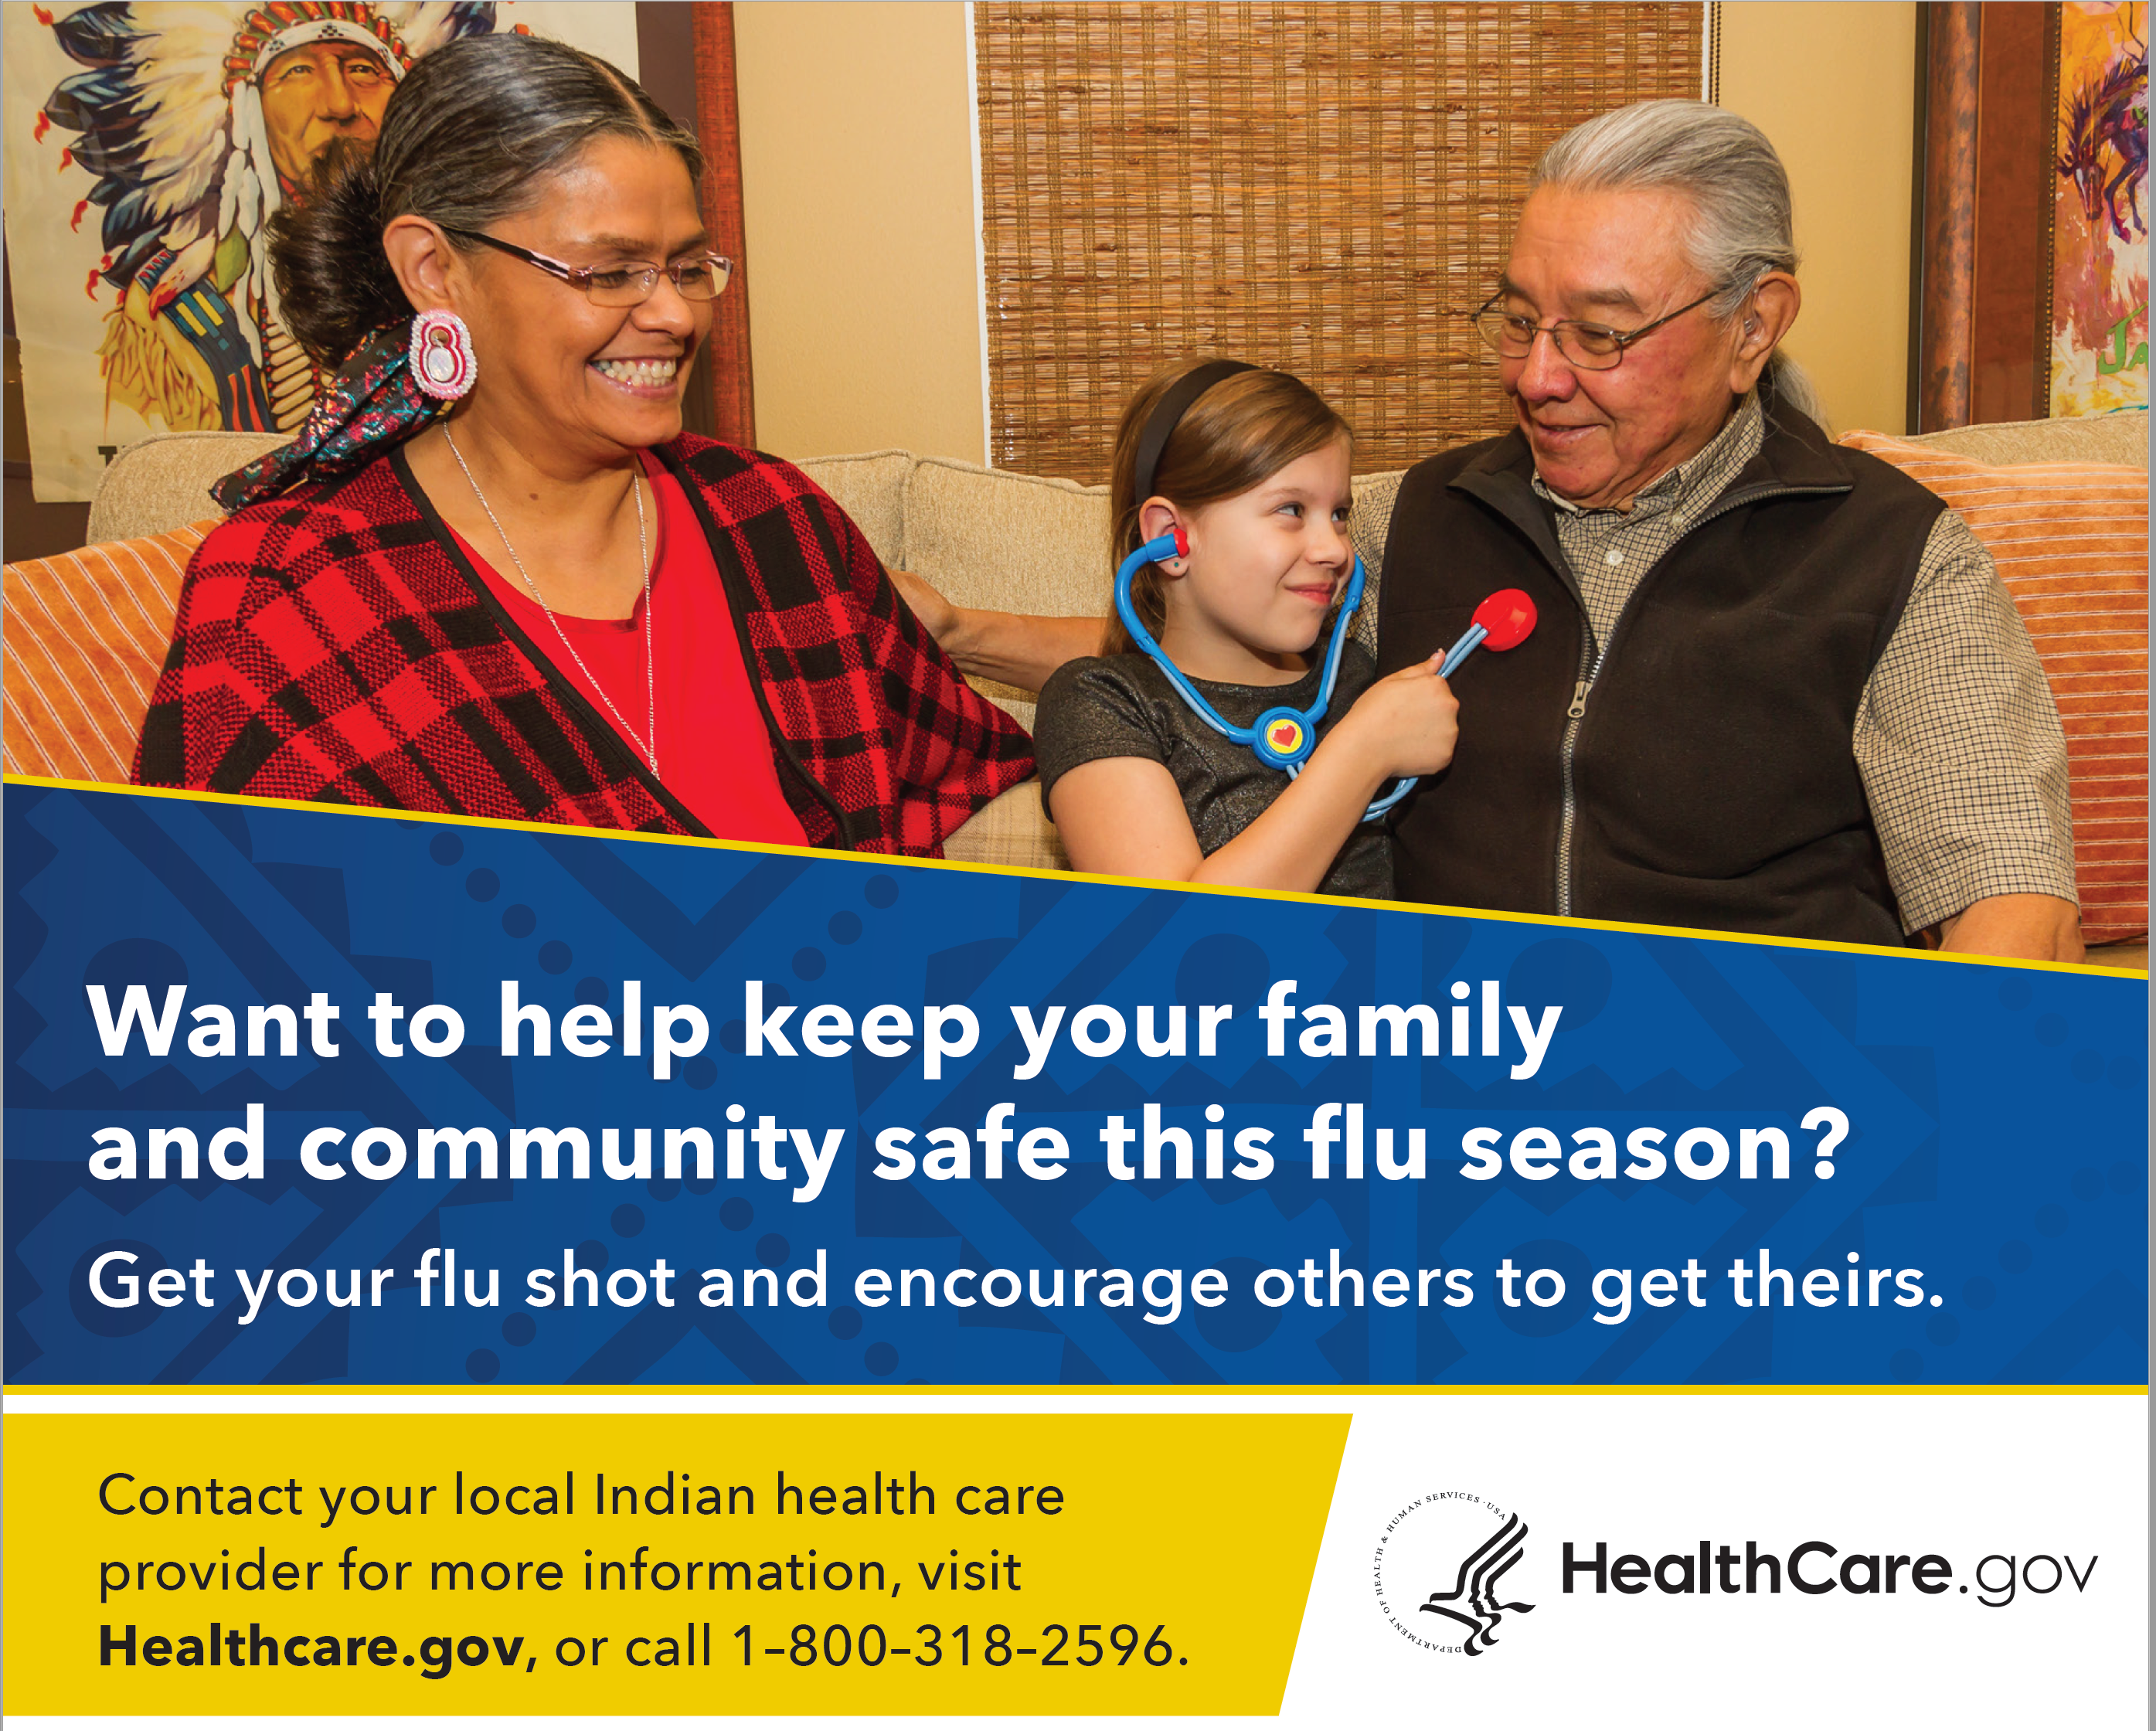 Get your flu shot (November 2020)